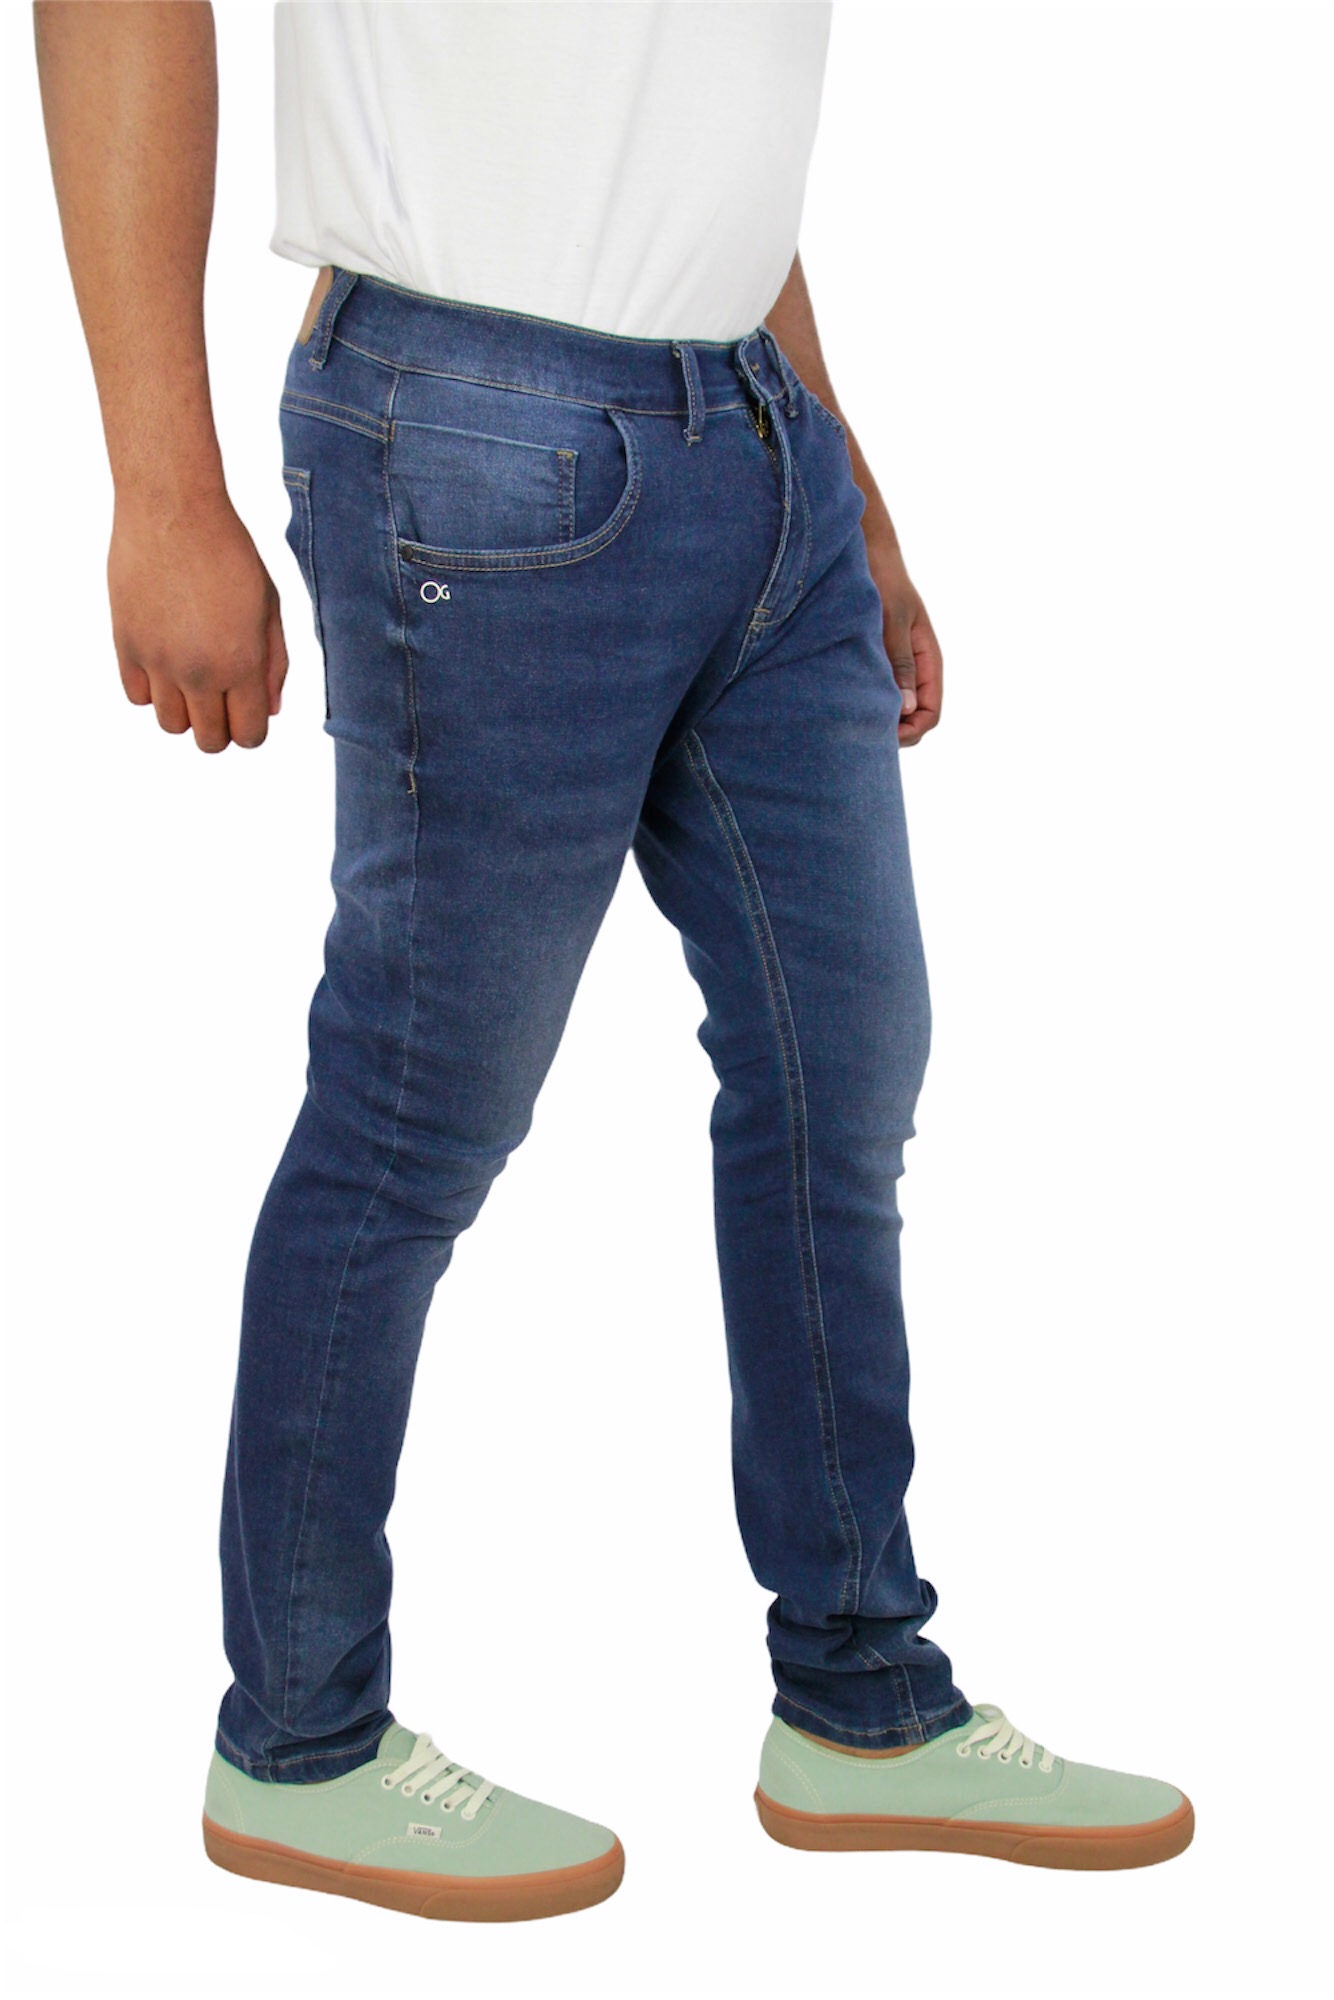 Calça Jeans Concept Skinny Ogochi